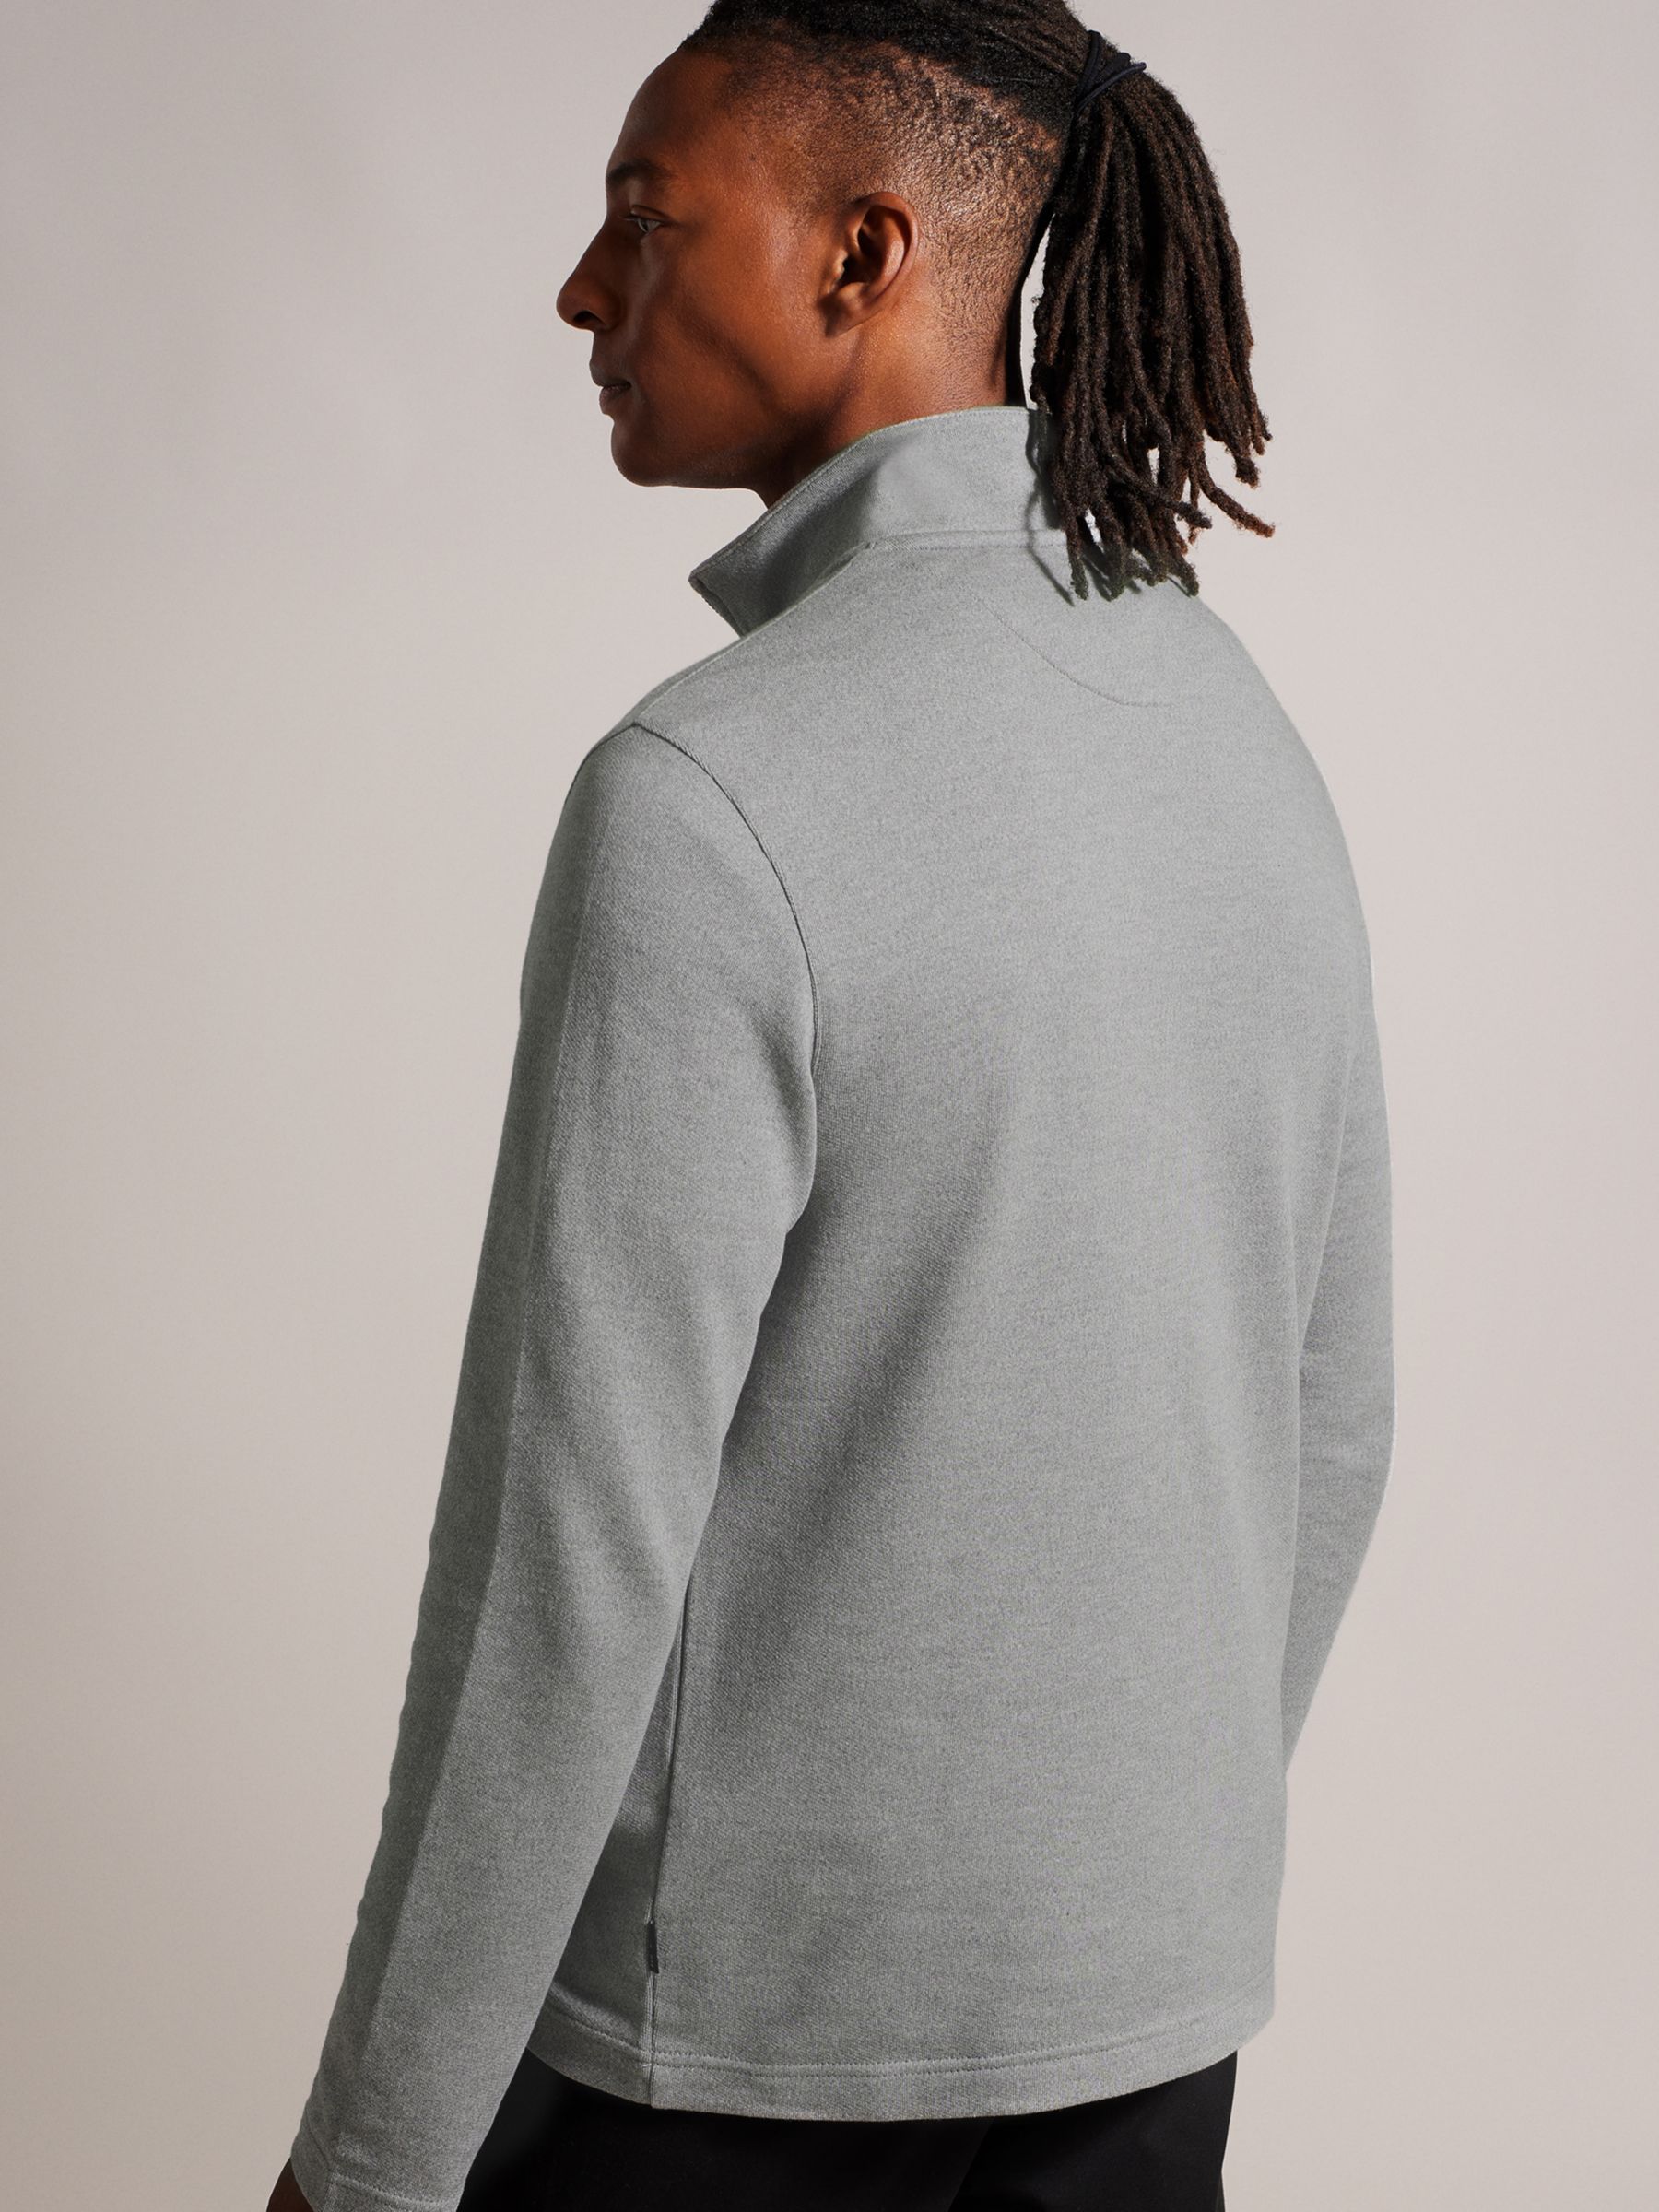 Ted Baker Long Sleeve Textured Panel Half Zip Fleece, Grey, S